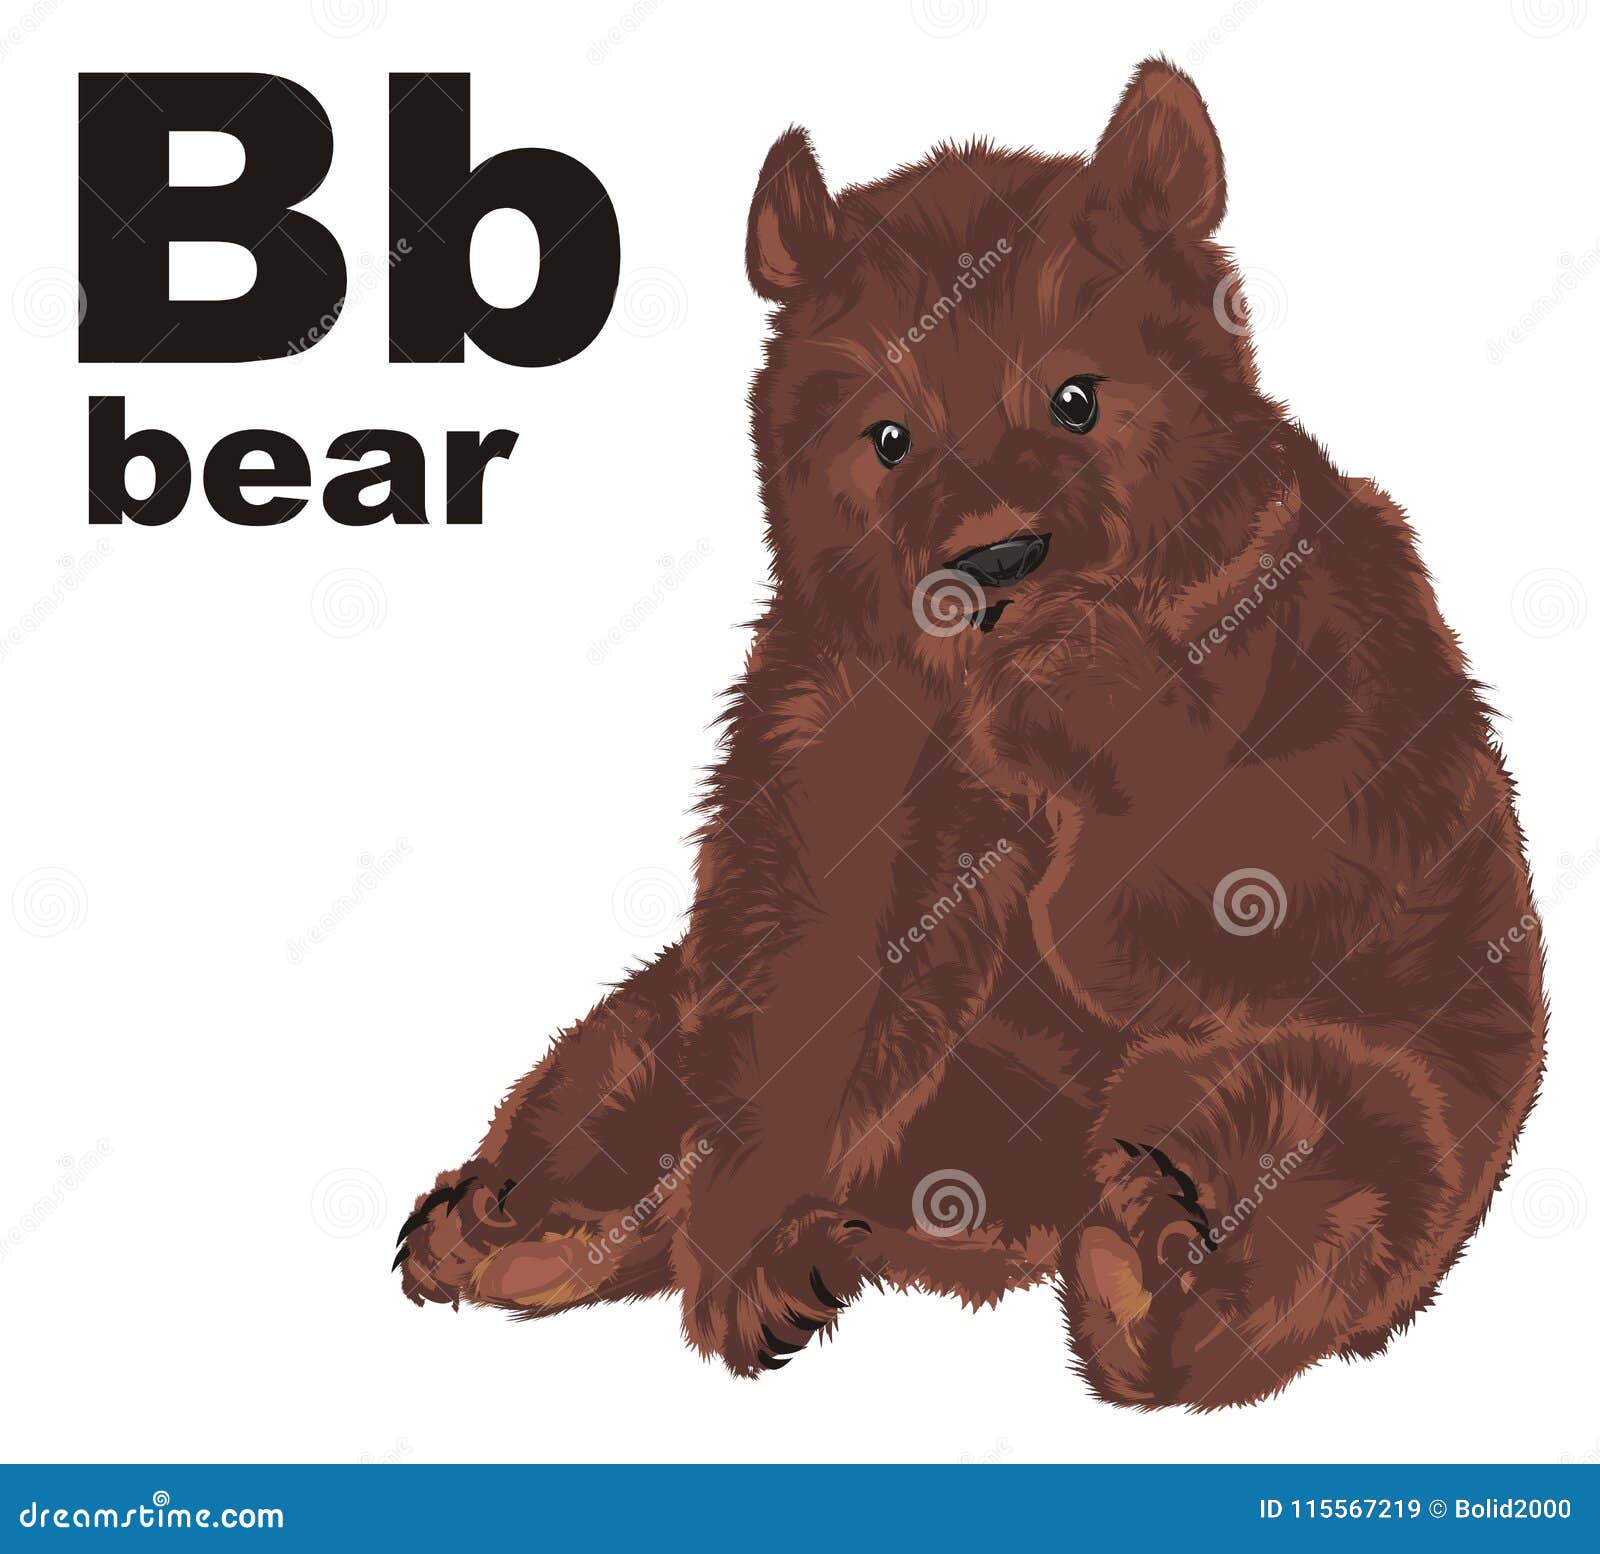 Английское слово медведь. Bear слово. Слово бир в виде медведя. Слово медведь с обводкой. Медведь с буквой z картинка.